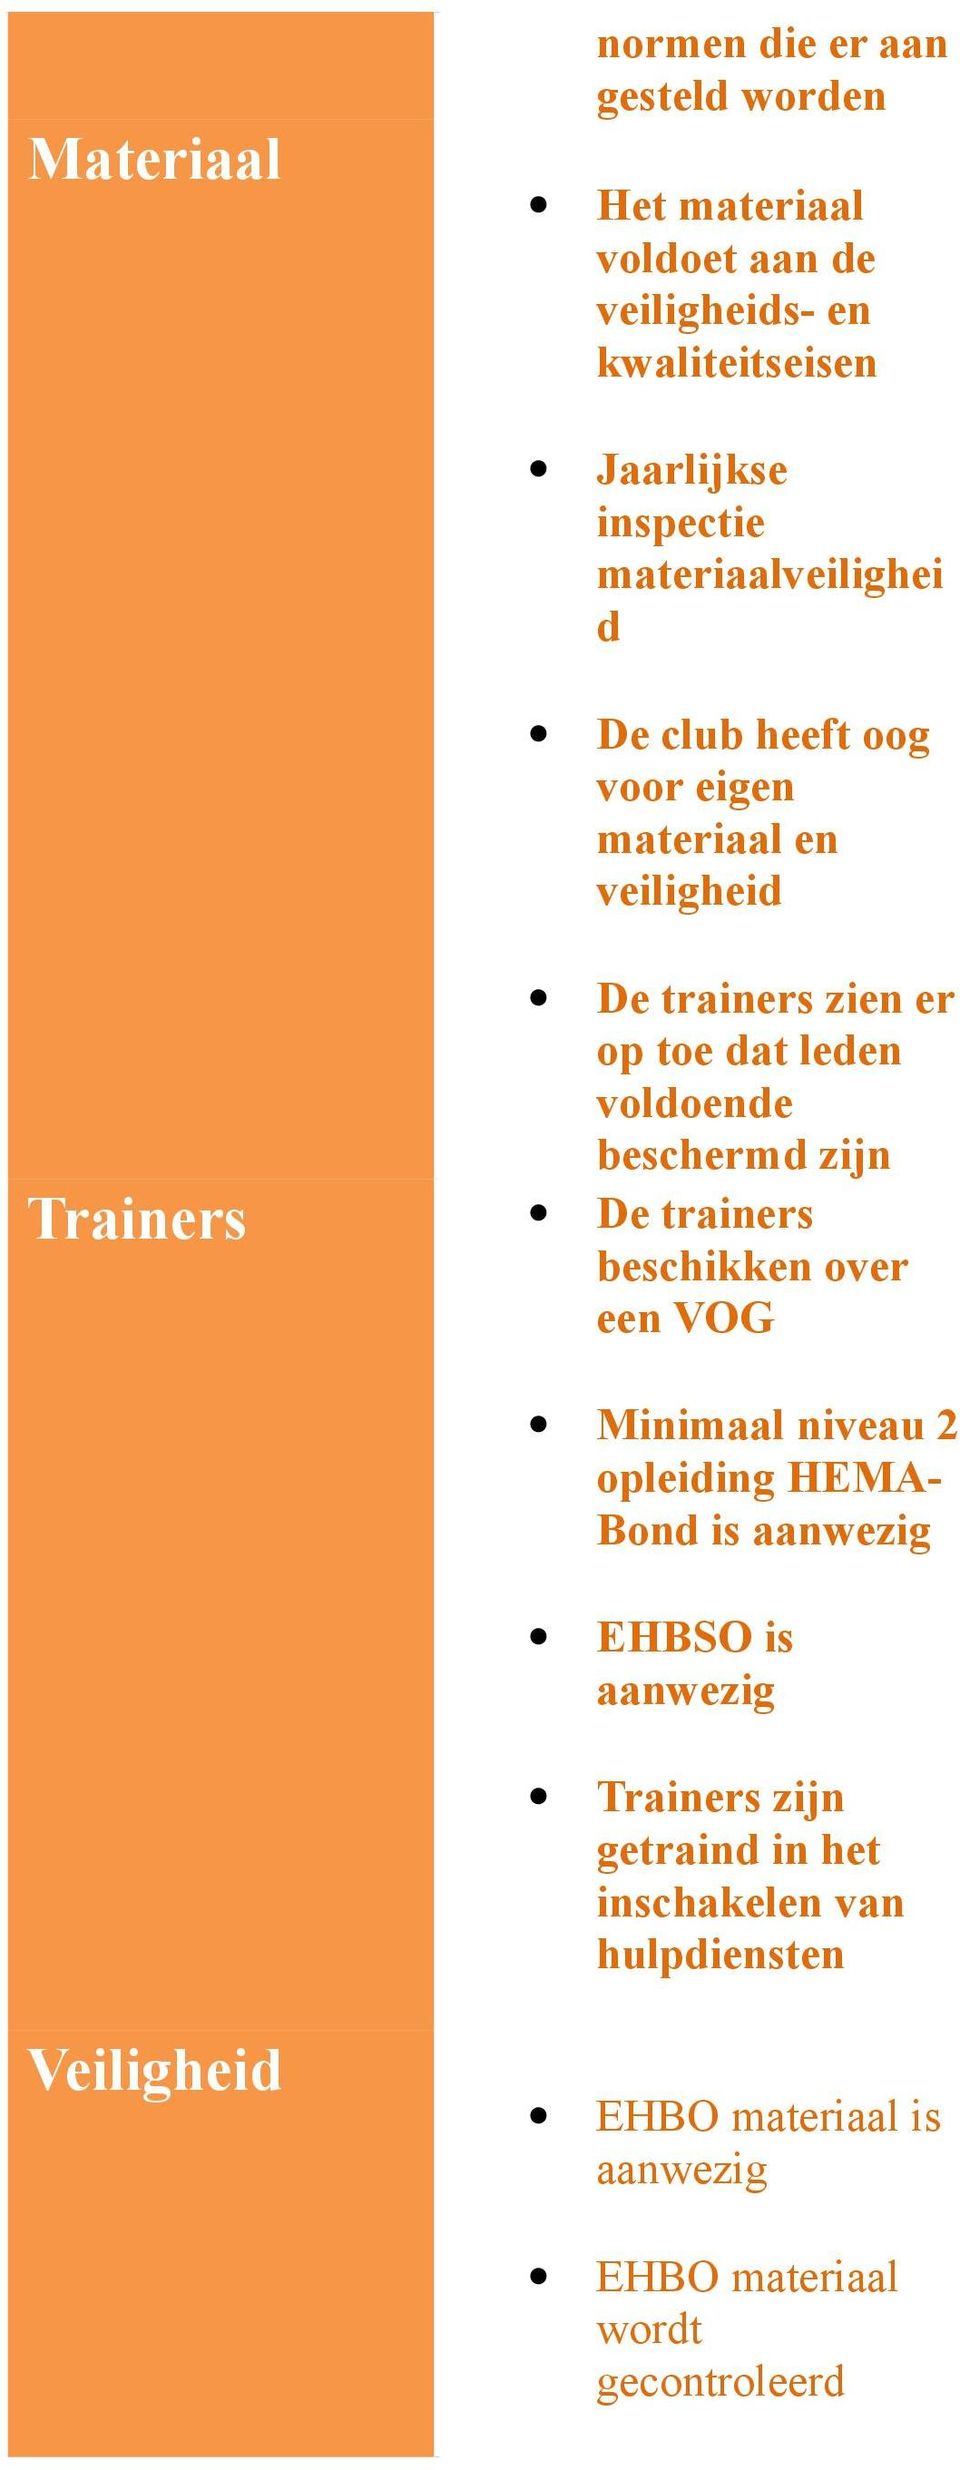 beschermd zijn Trainers De trainers beschikken over een VOG Minimaal niveau 2 opleiding HEMA- Bond is aanwezig EHBSO is